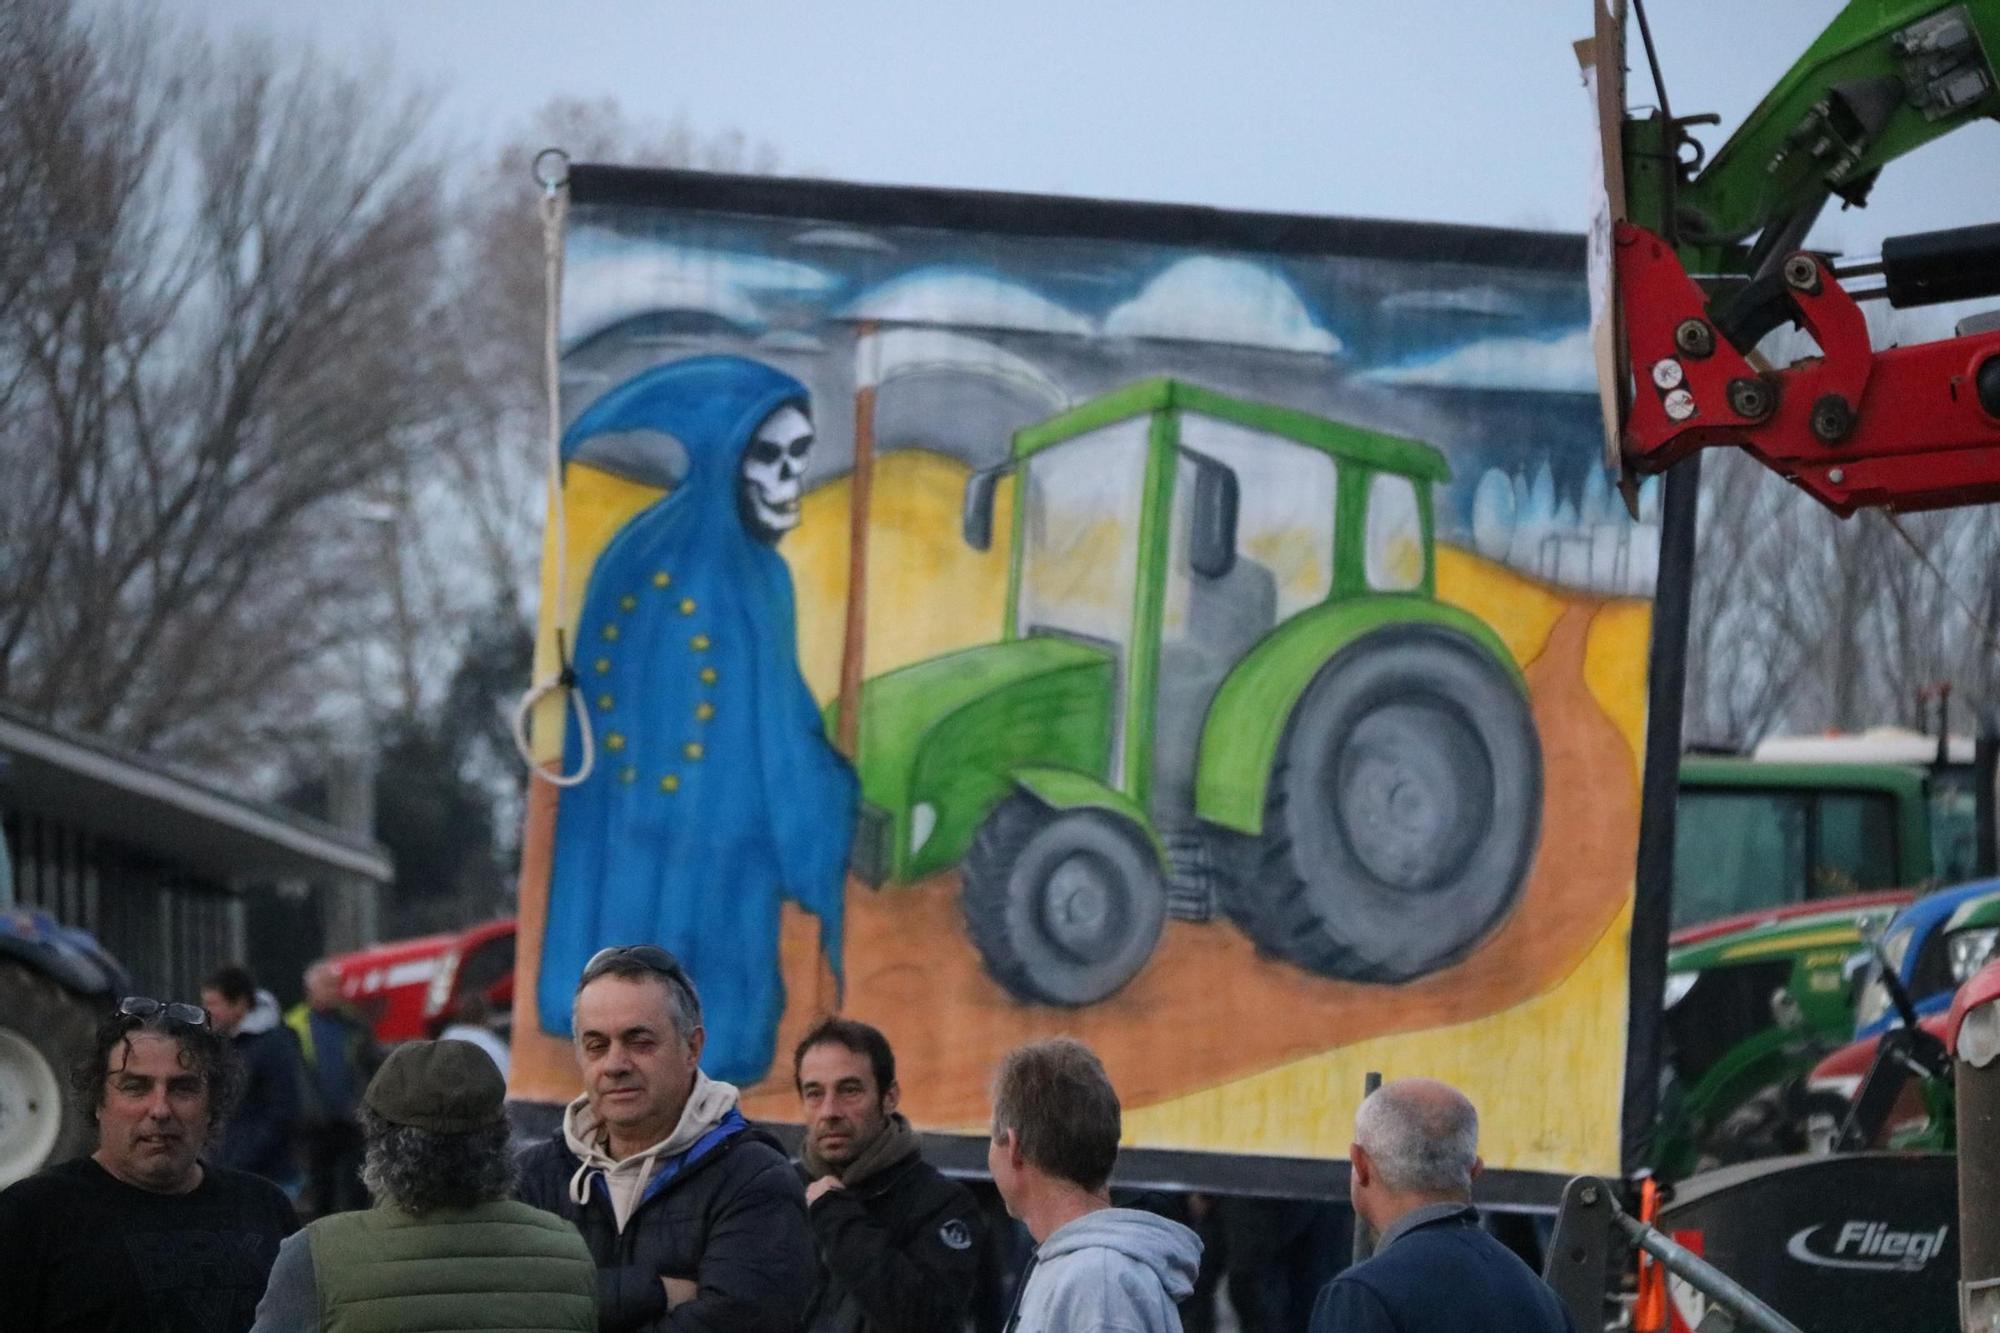 Més de 200 tractors es concentren a Girona